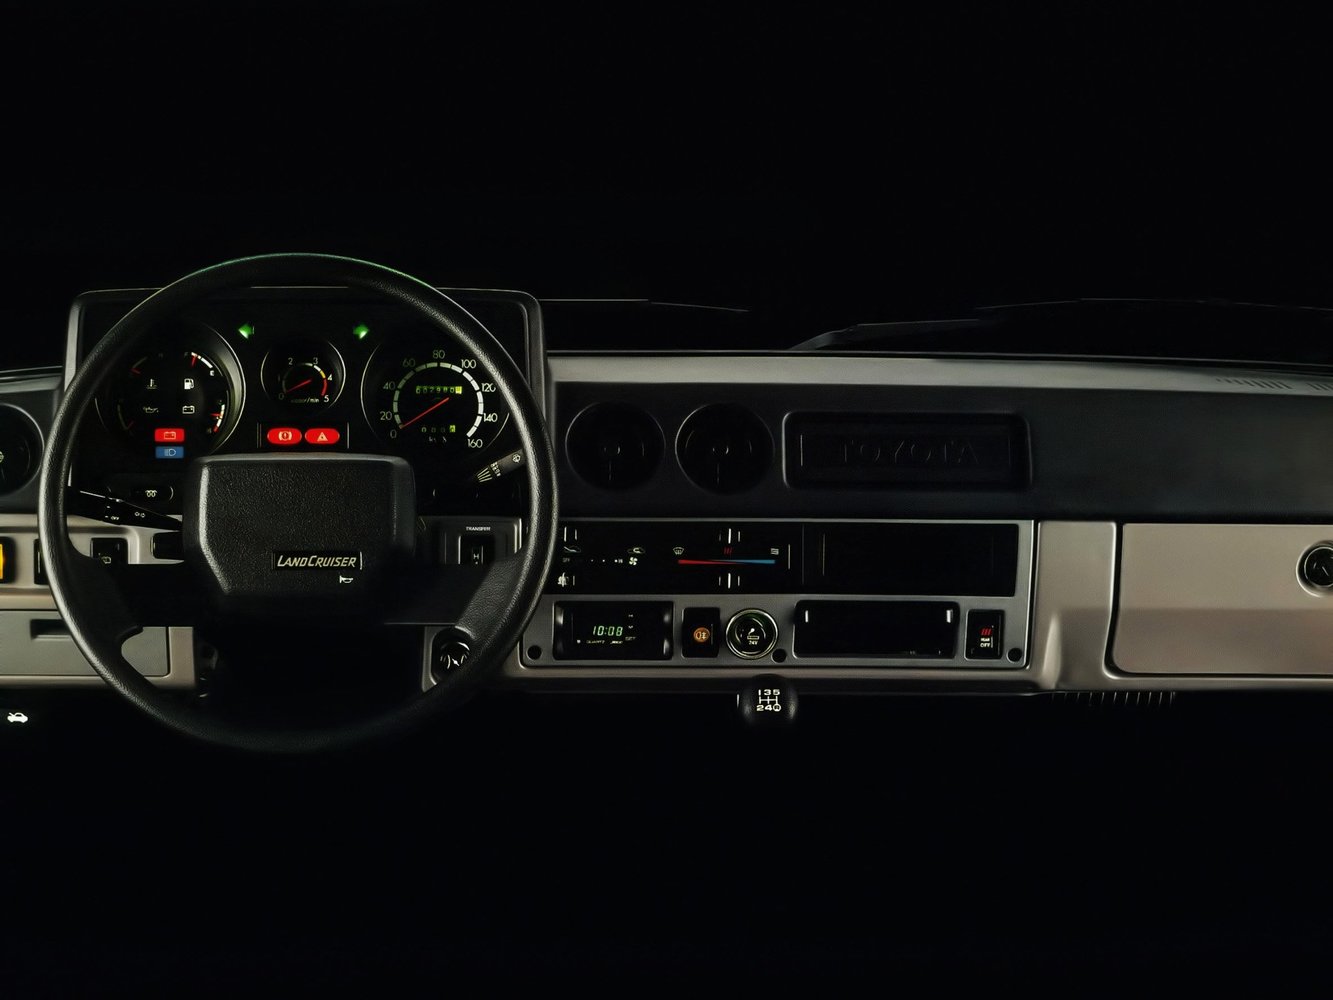 внедорожник Toyota Land Cruiser 1980 - 1990г выпуска модификация 3.4 AT (120 л.с.) 4×4